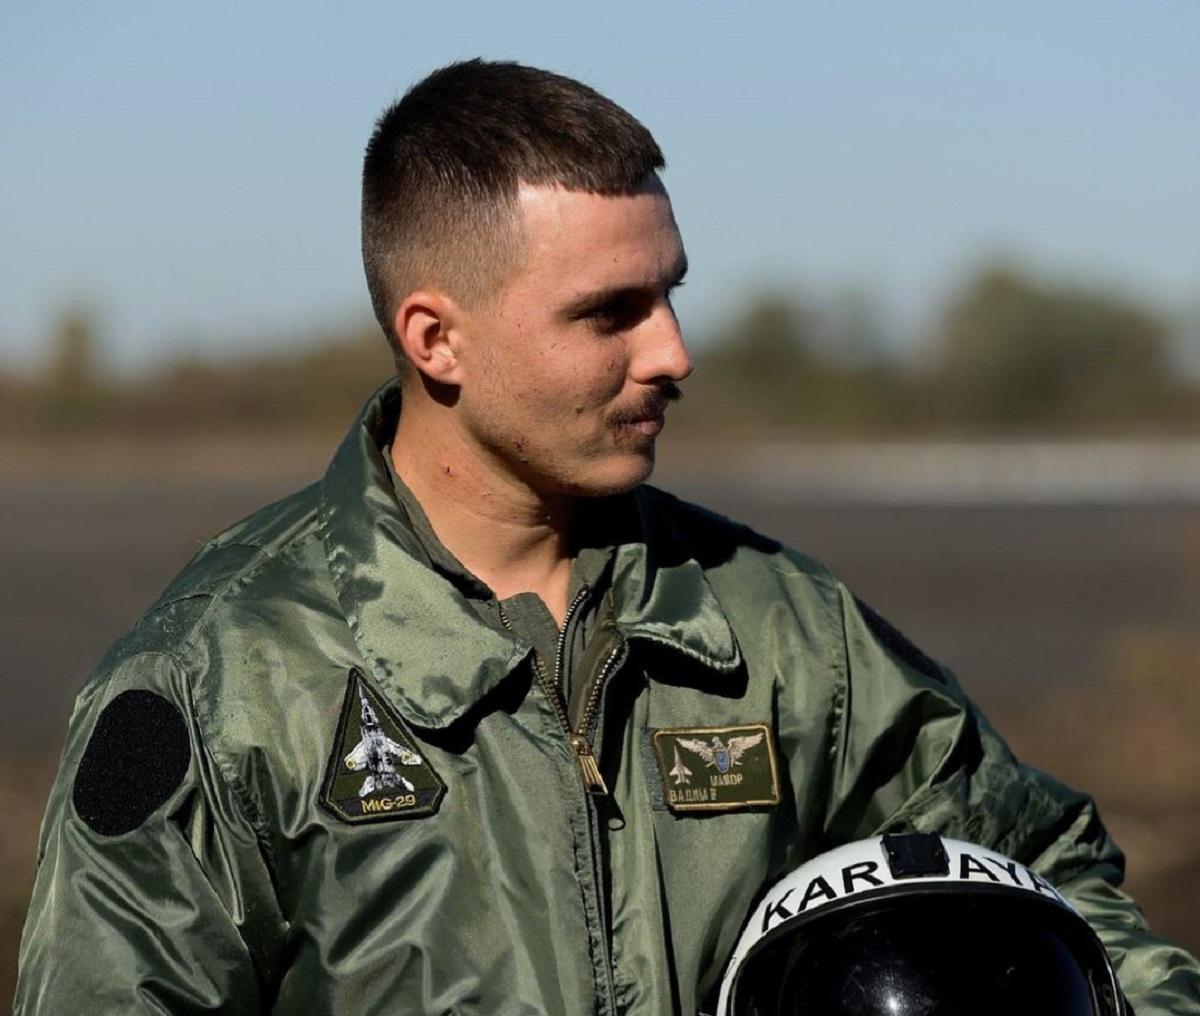 Известный украинский пилот Karaya получил звание Героя Украины / фото Karaya в Instagram